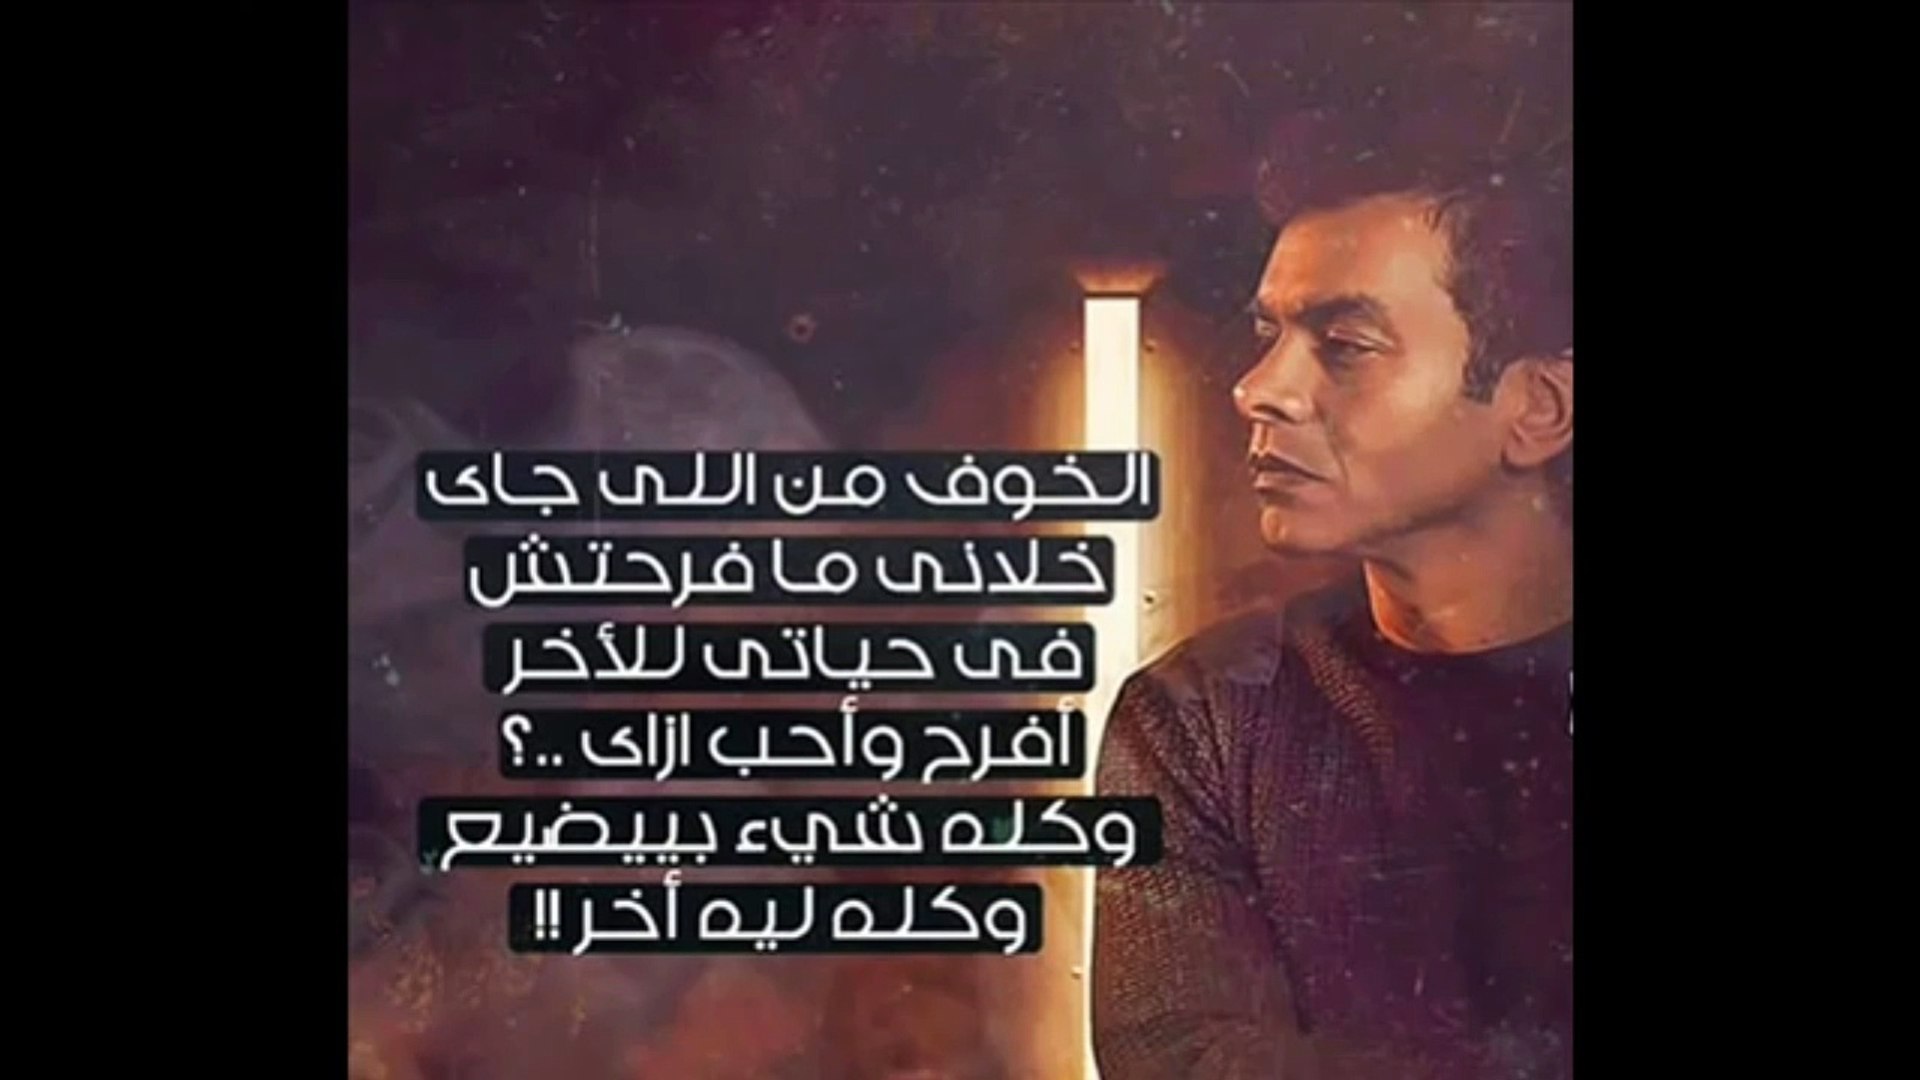 محمد محي الخوف من اللي جاي 2015 - فيديو Dailymotion